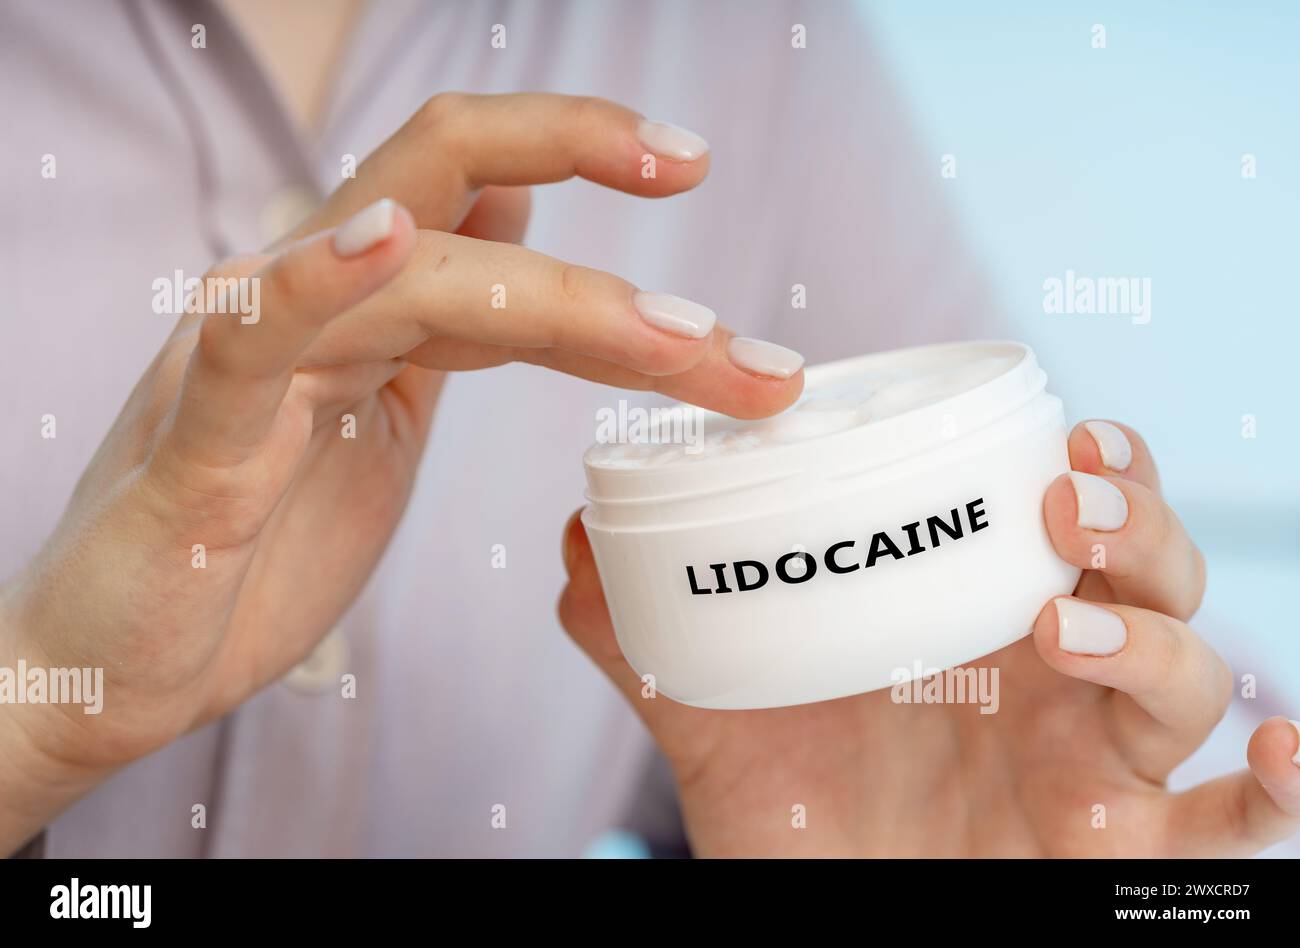 Lidocain-medizinische Creme, konzeptuelles Bild. Eine lokale Betäubungscreme zur Betäubung der Haut und vorübergehende Linderung von Schmerzen, Juckreiz oder Unwohlsein. Stockfoto